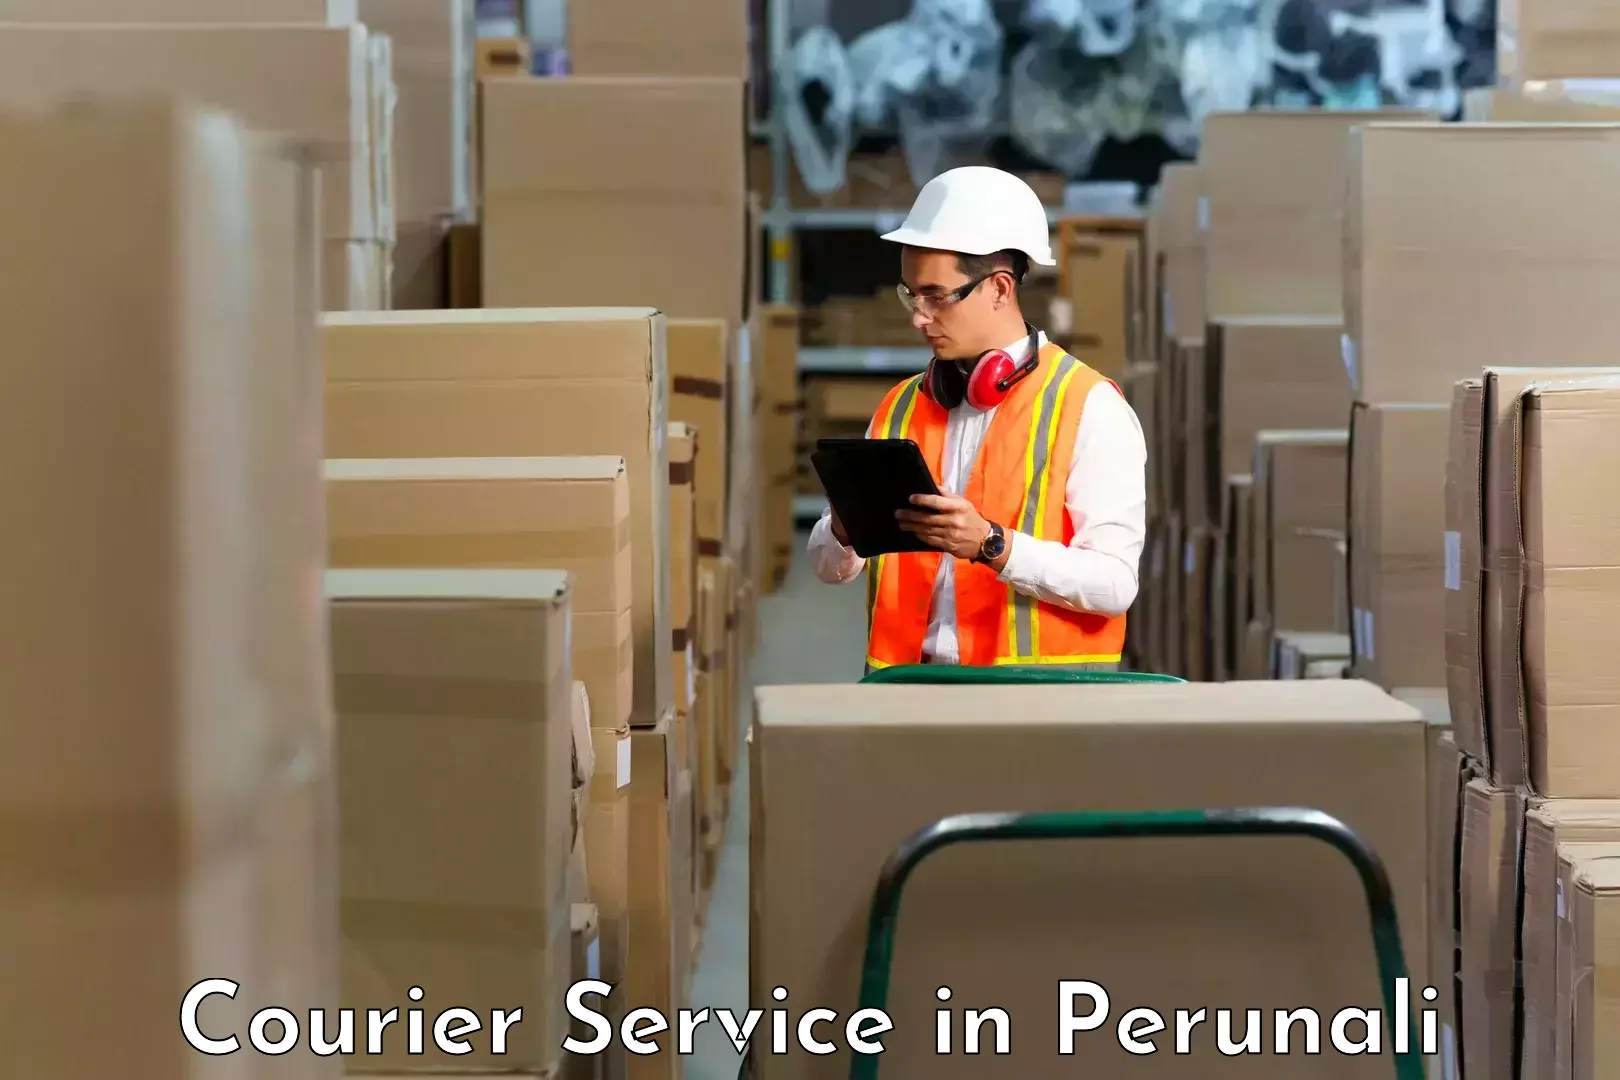 24/7 courier service in Perunali